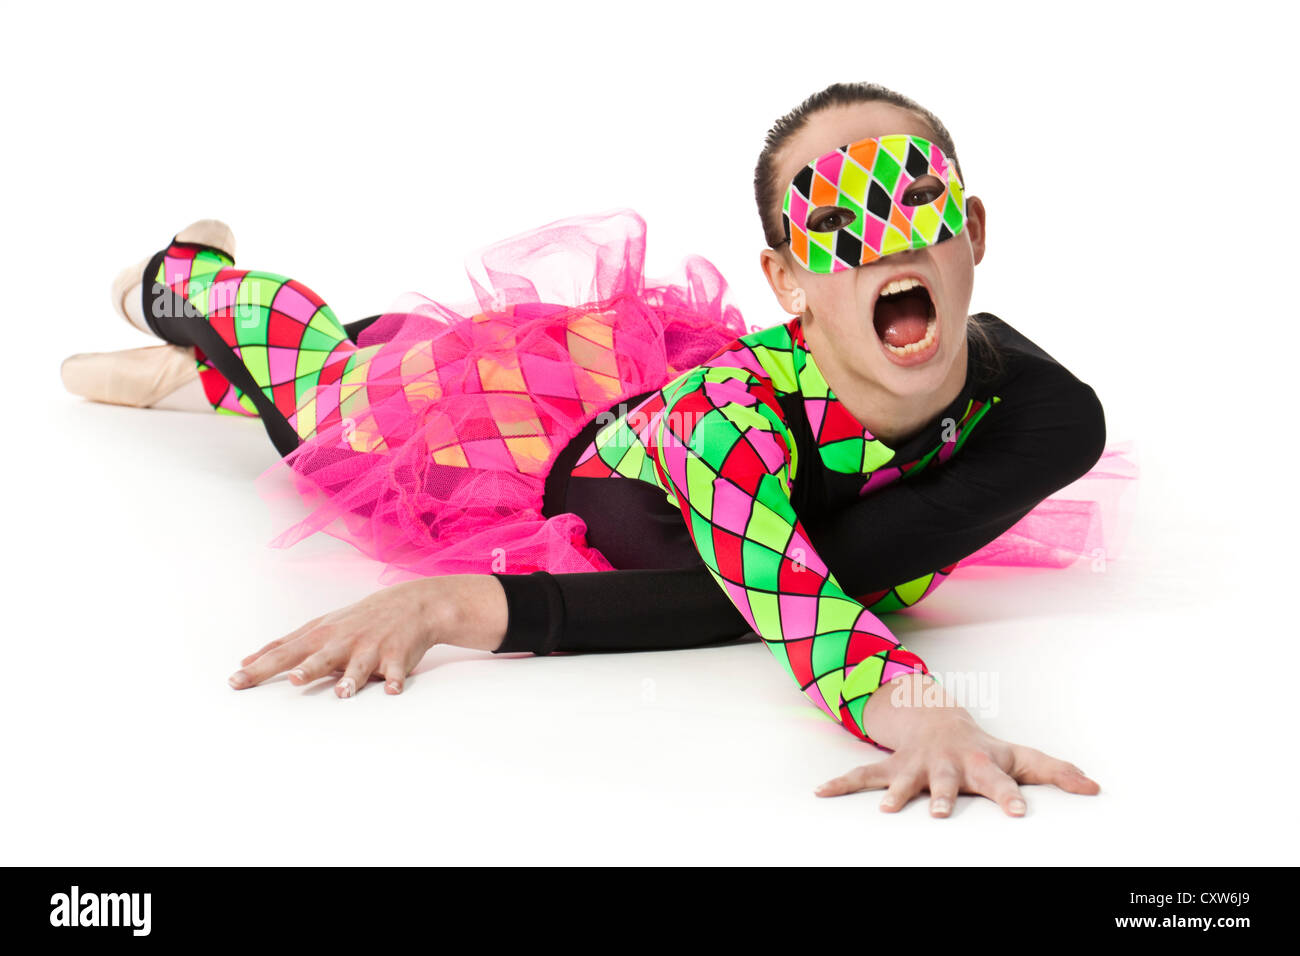 Ballerina adolescenti nei moderni multi-colore di arlecchino-pattern costume di balletto con compensazione rosa e indossa una corrispondente maschera facciale Foto Stock